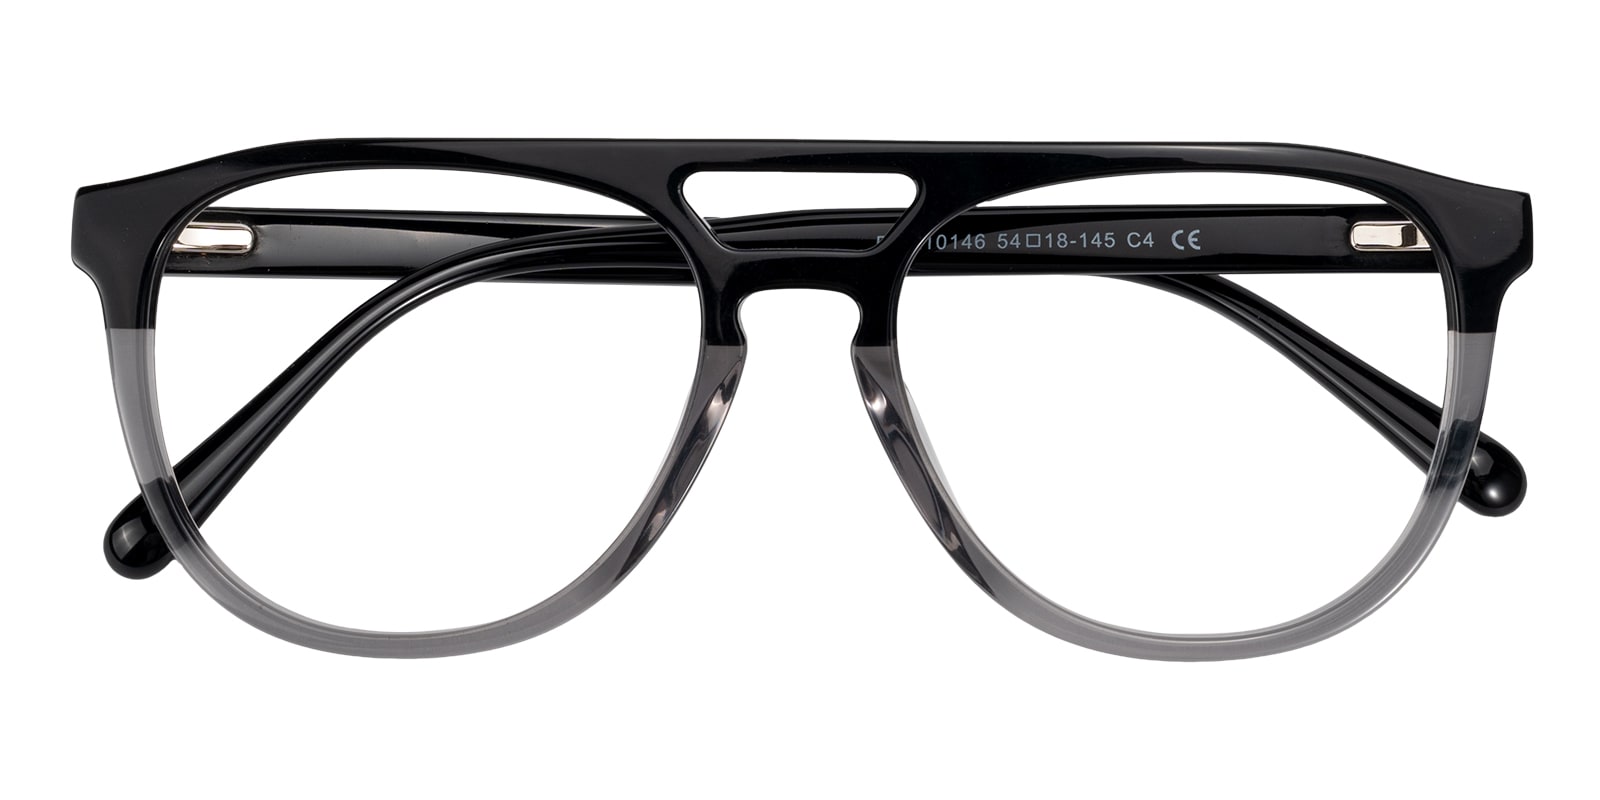 Aviator Eyeglasses, Full Frame Black/Gray Plastic - FZ2126